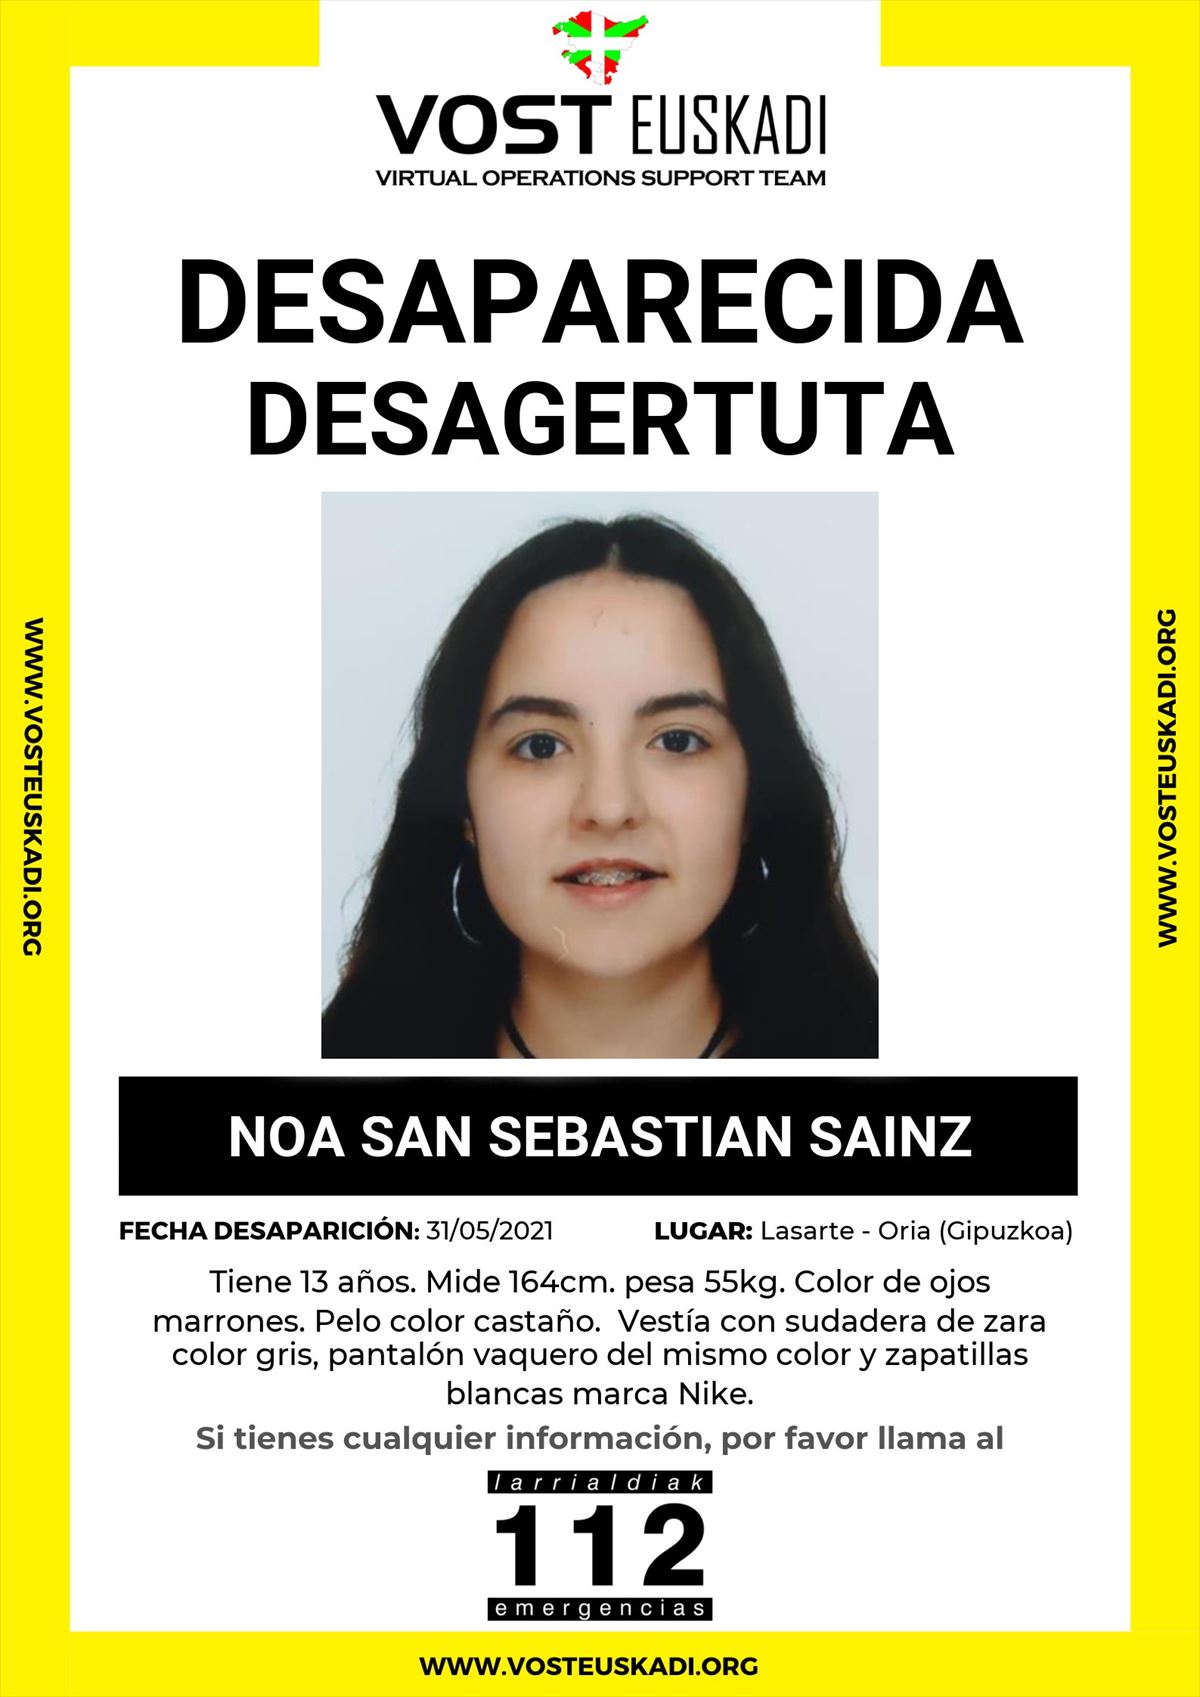 La menor de 13 años desaparecida en Lasarte-Oria